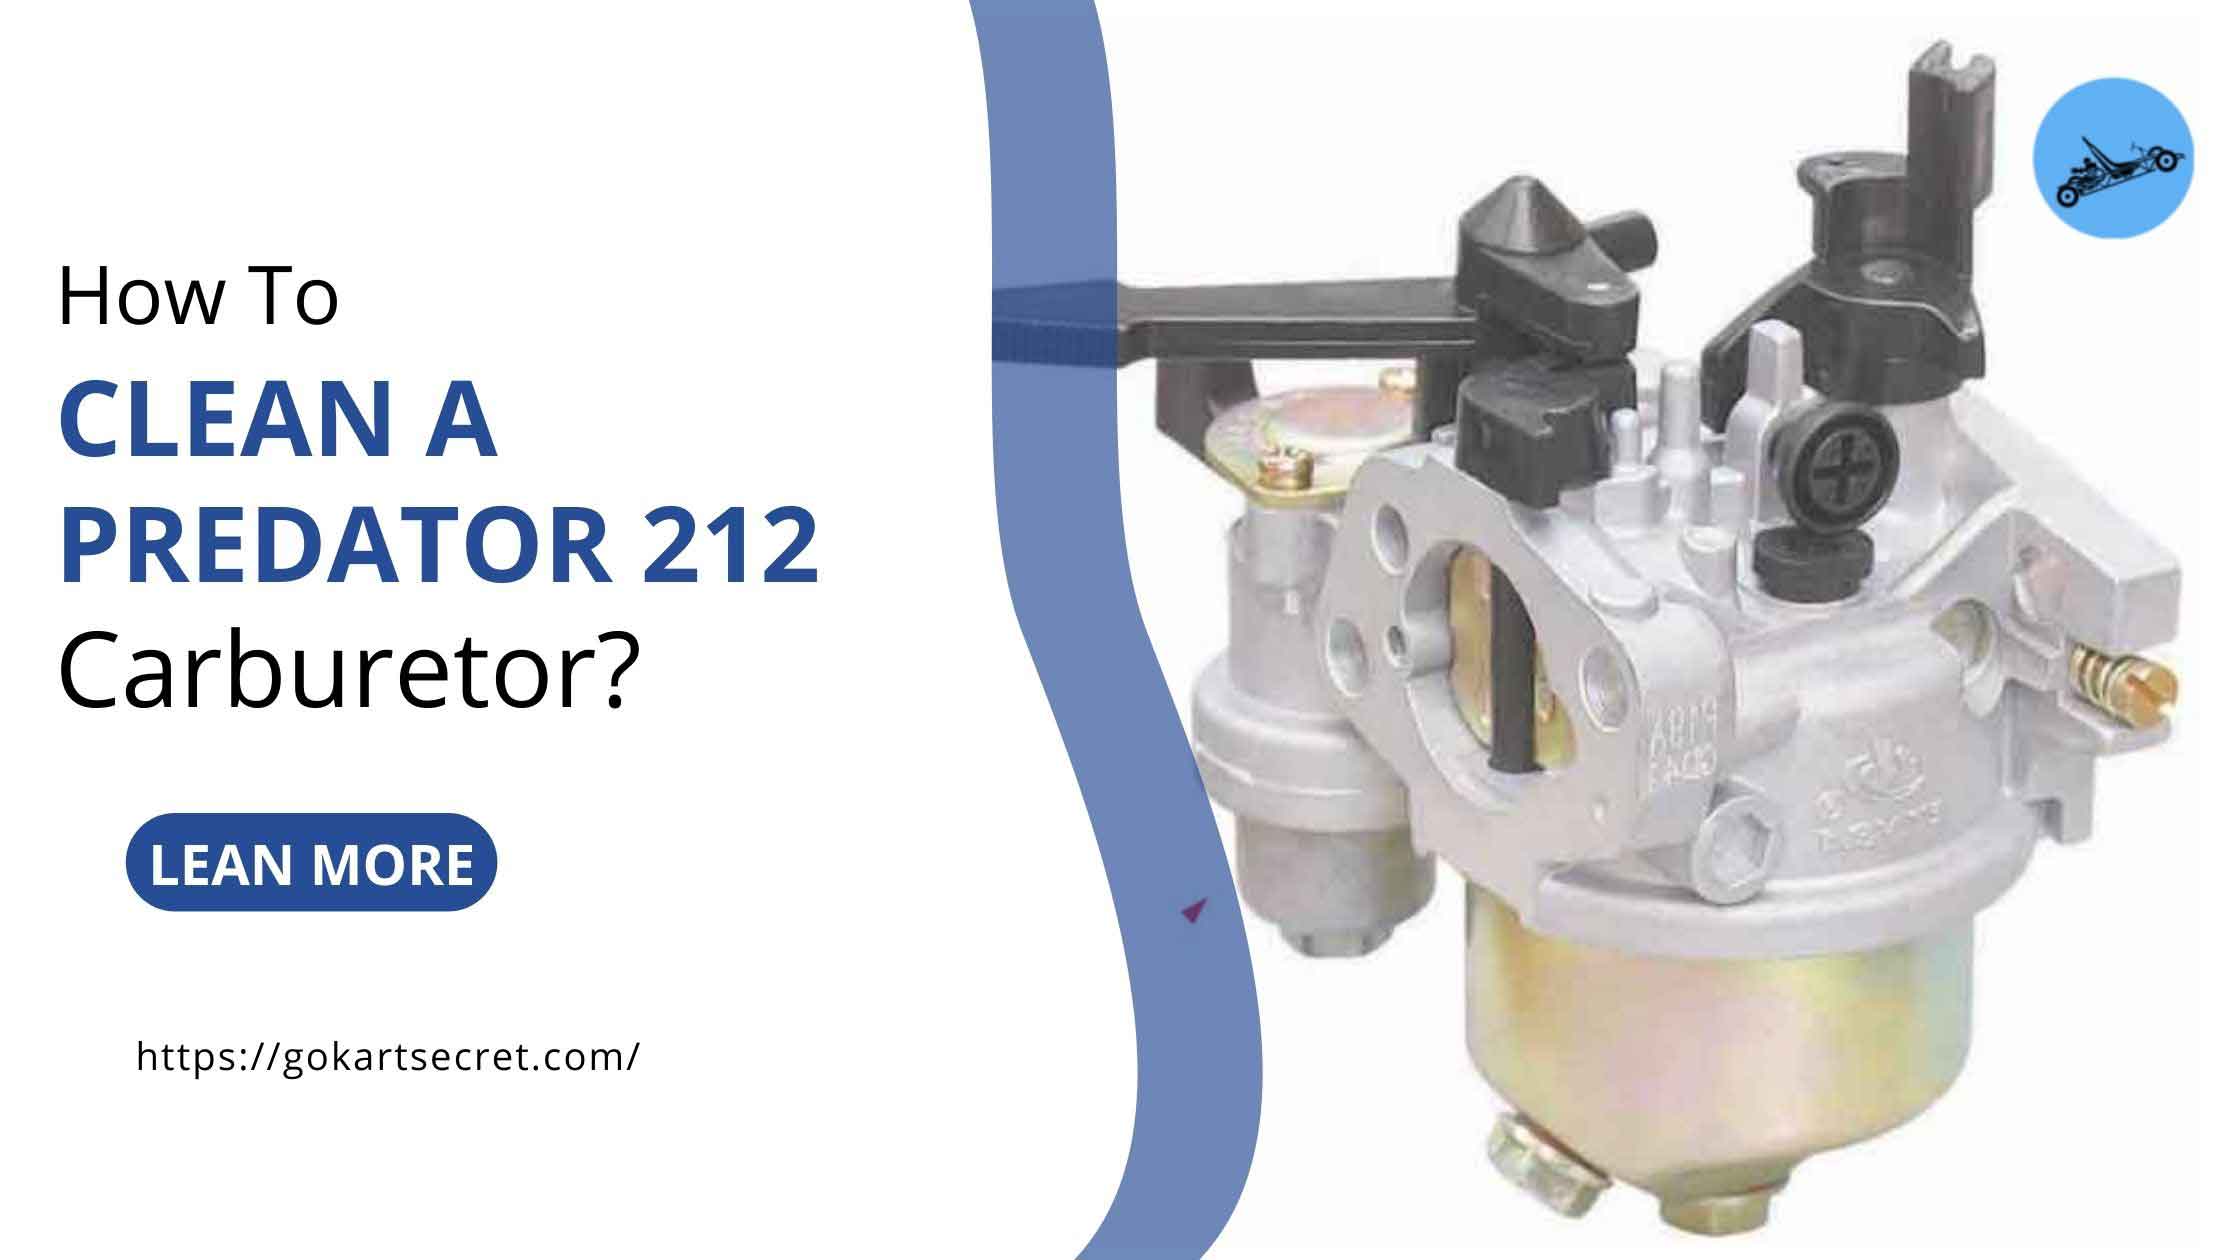 How To Clean A Predator 212 Carburetor?